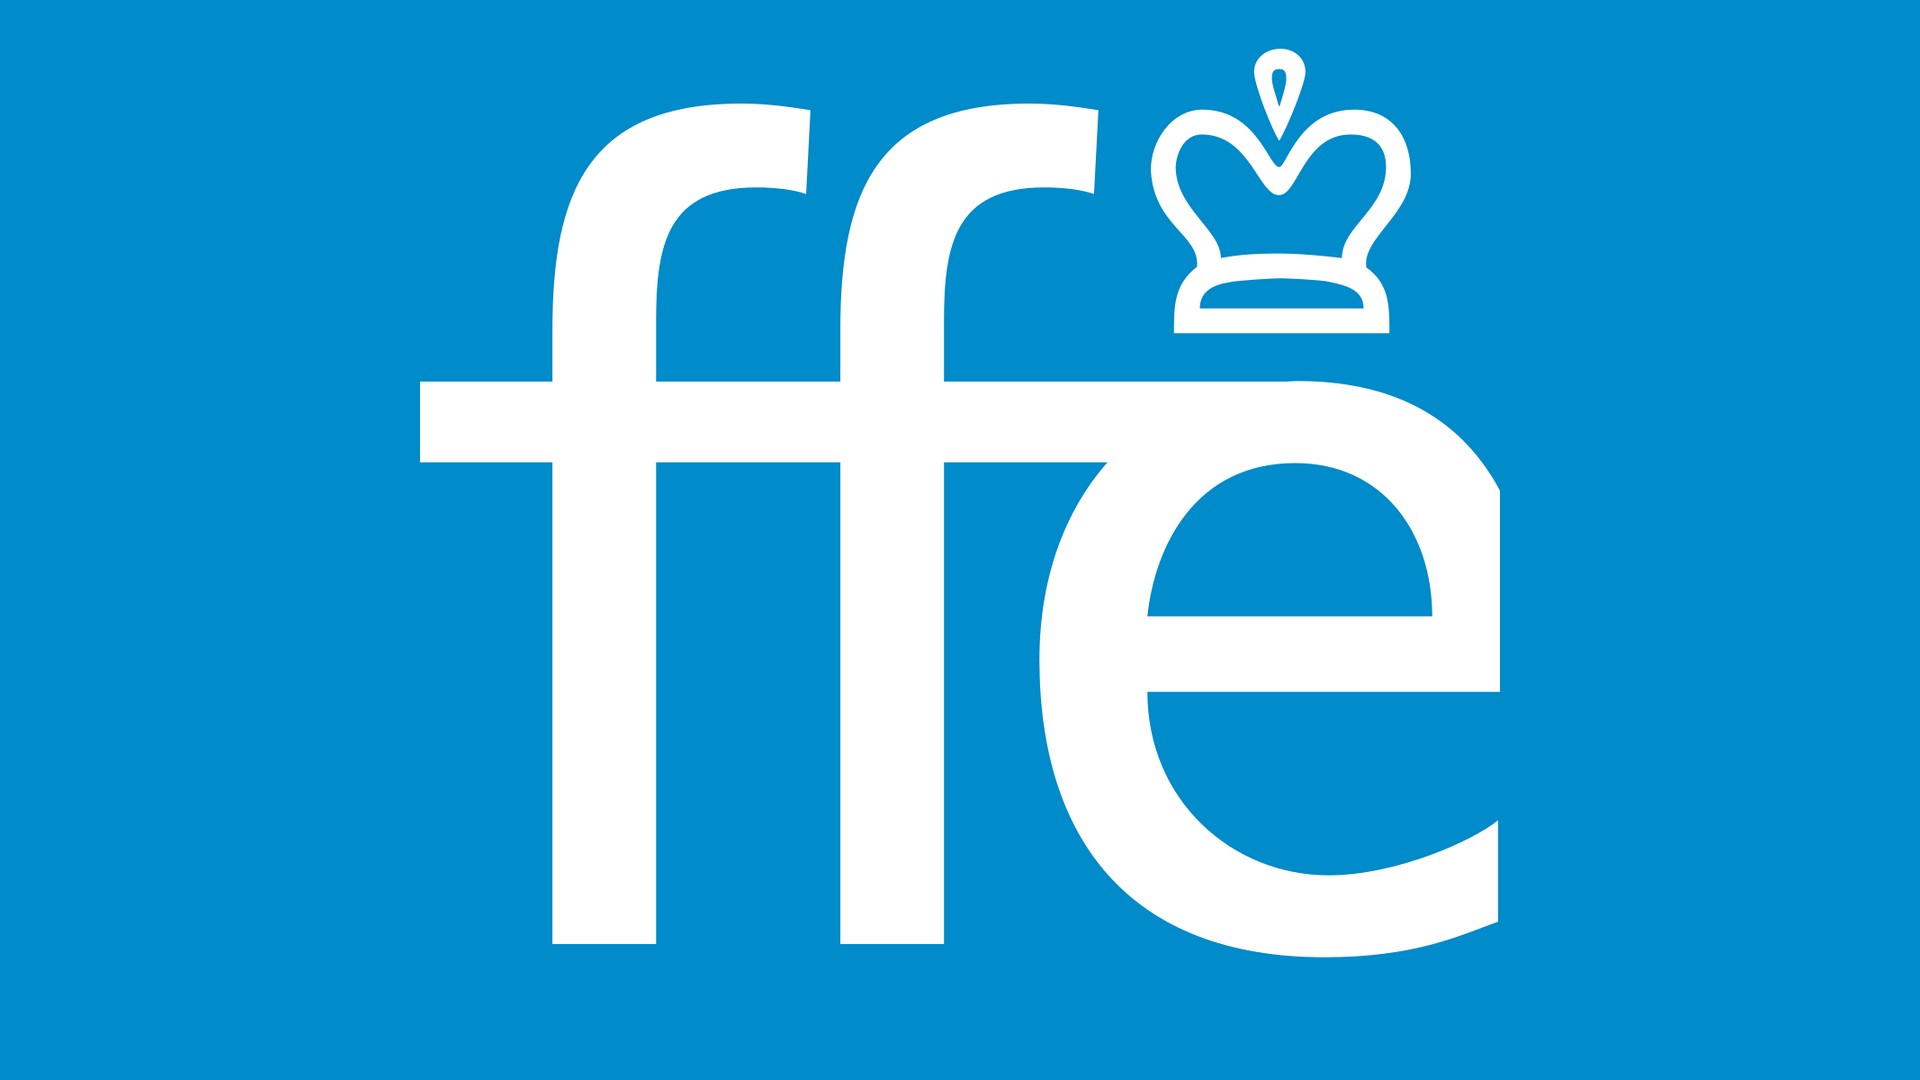 Fédération française d’éhec (1) logo